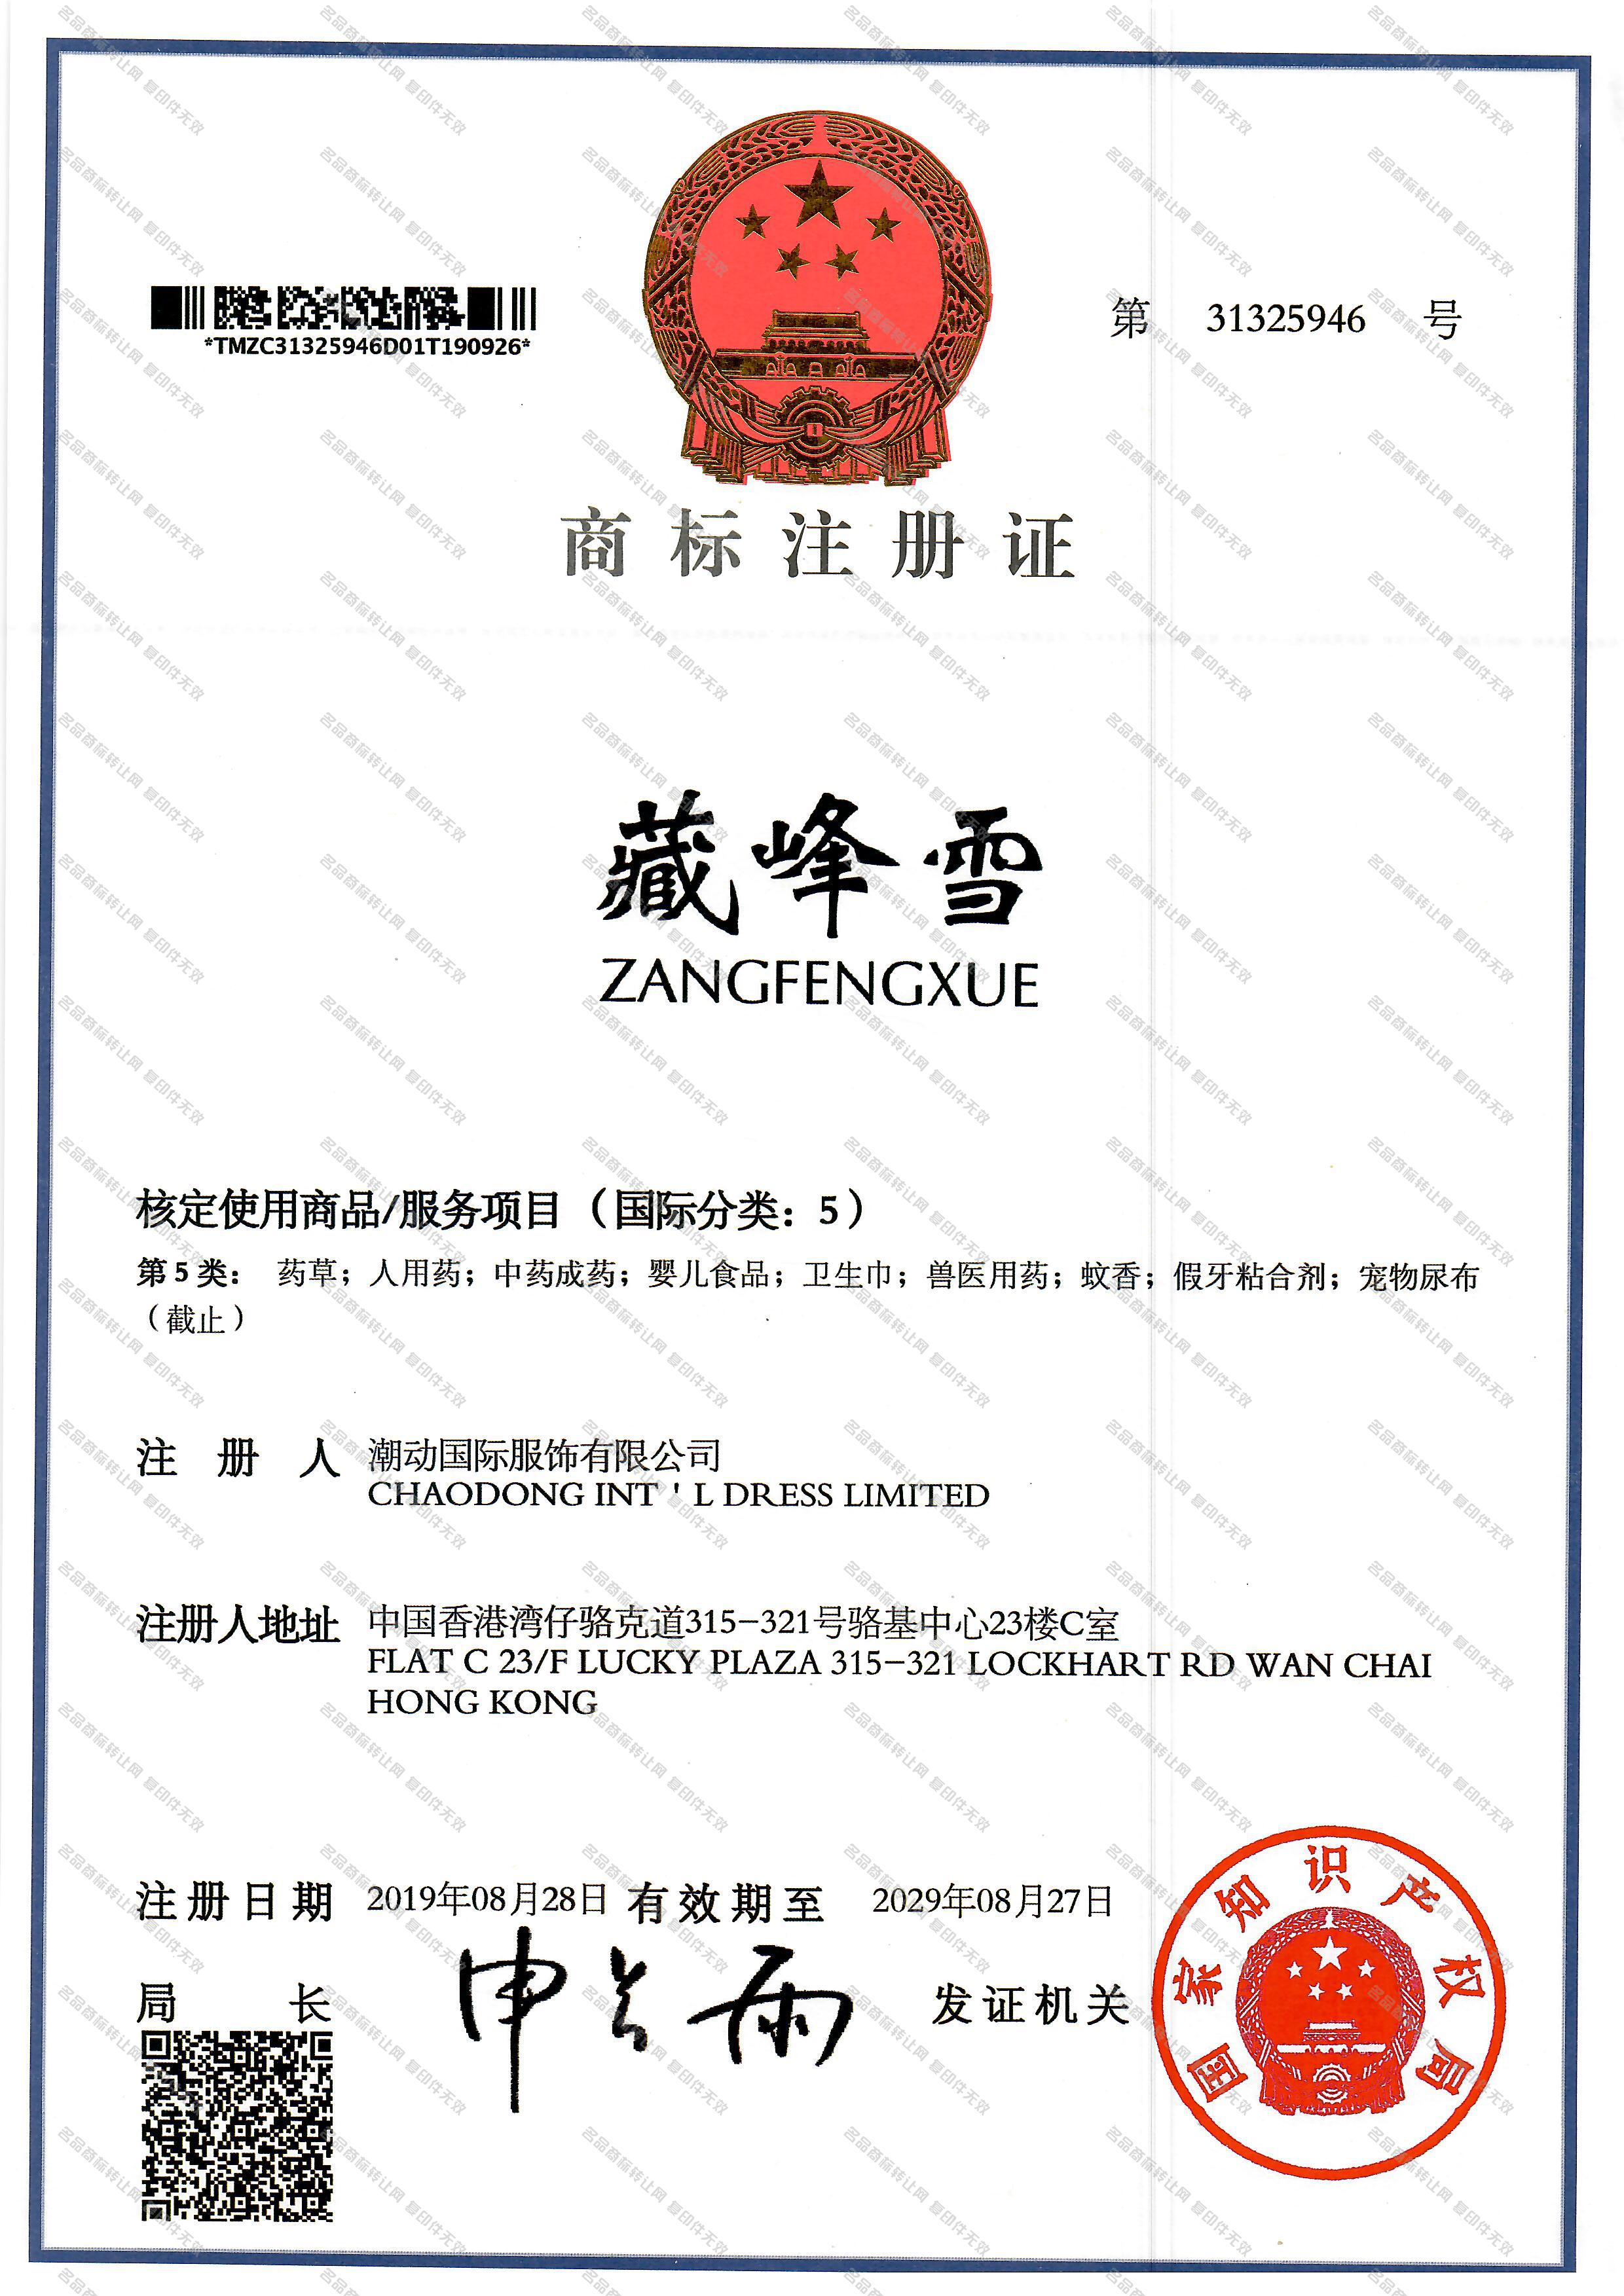 藏峰雪 ZANGFENGXUE注册证